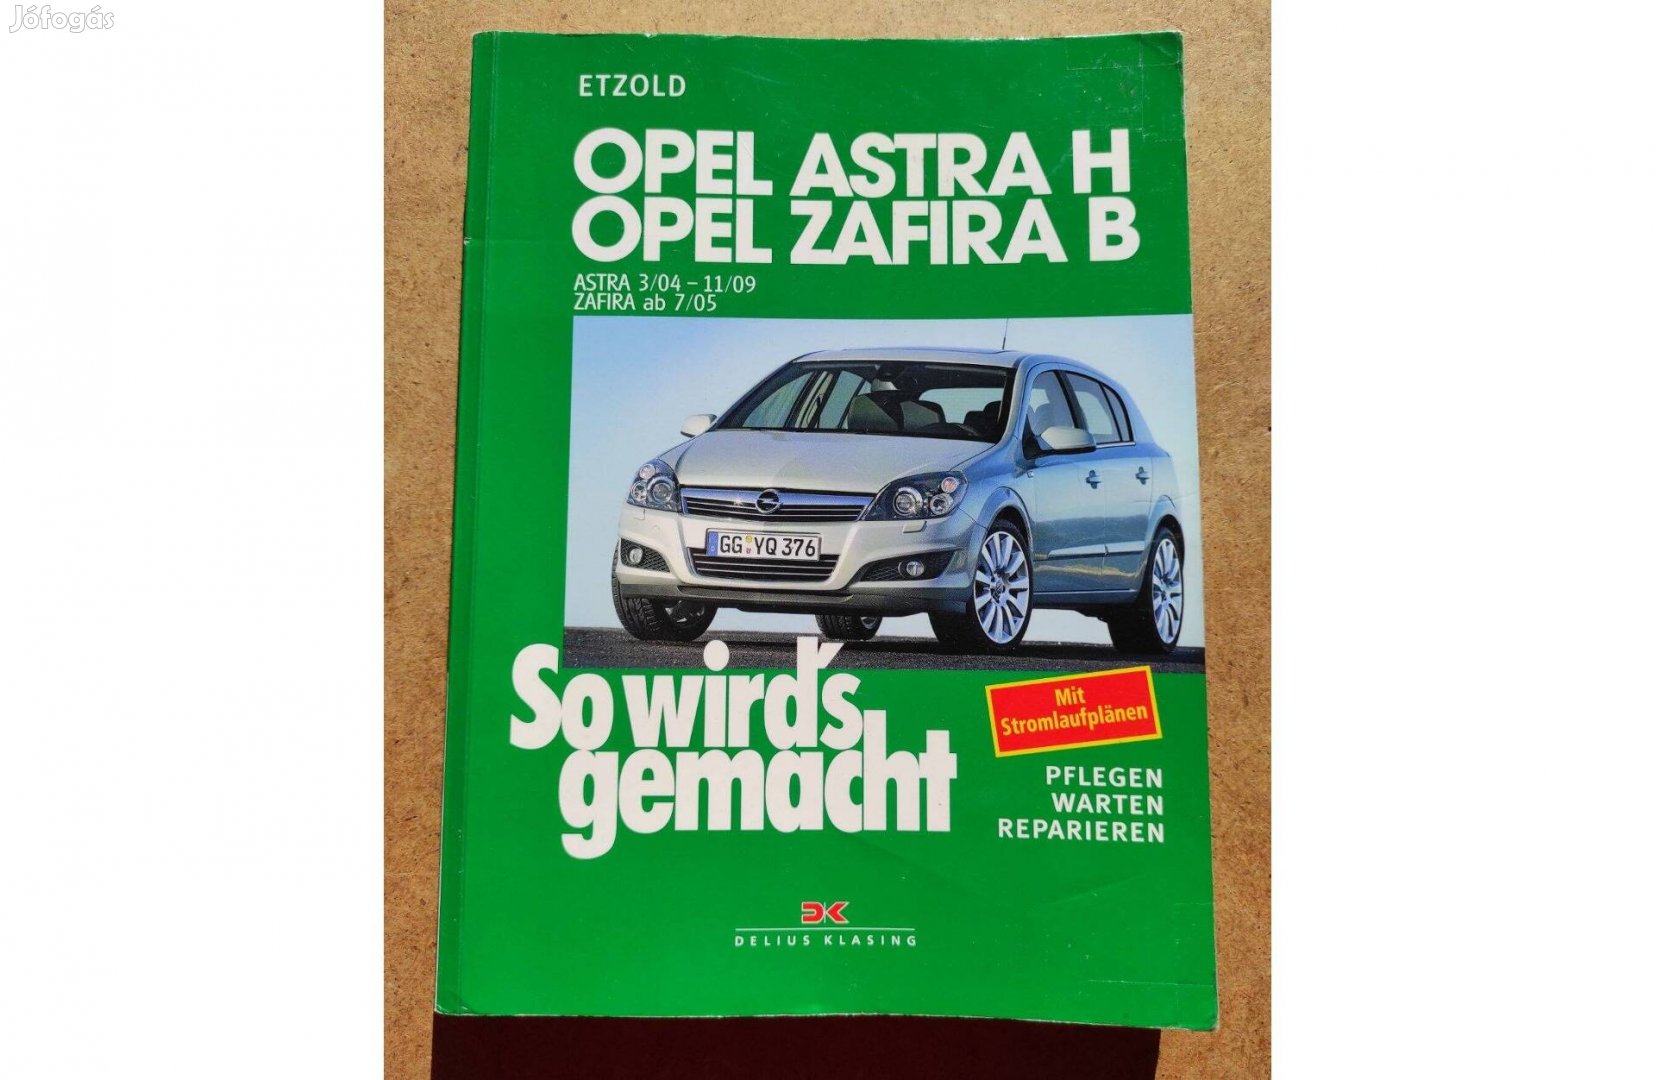 Opel Astra H, Zafira B javítási karbantartási könyv